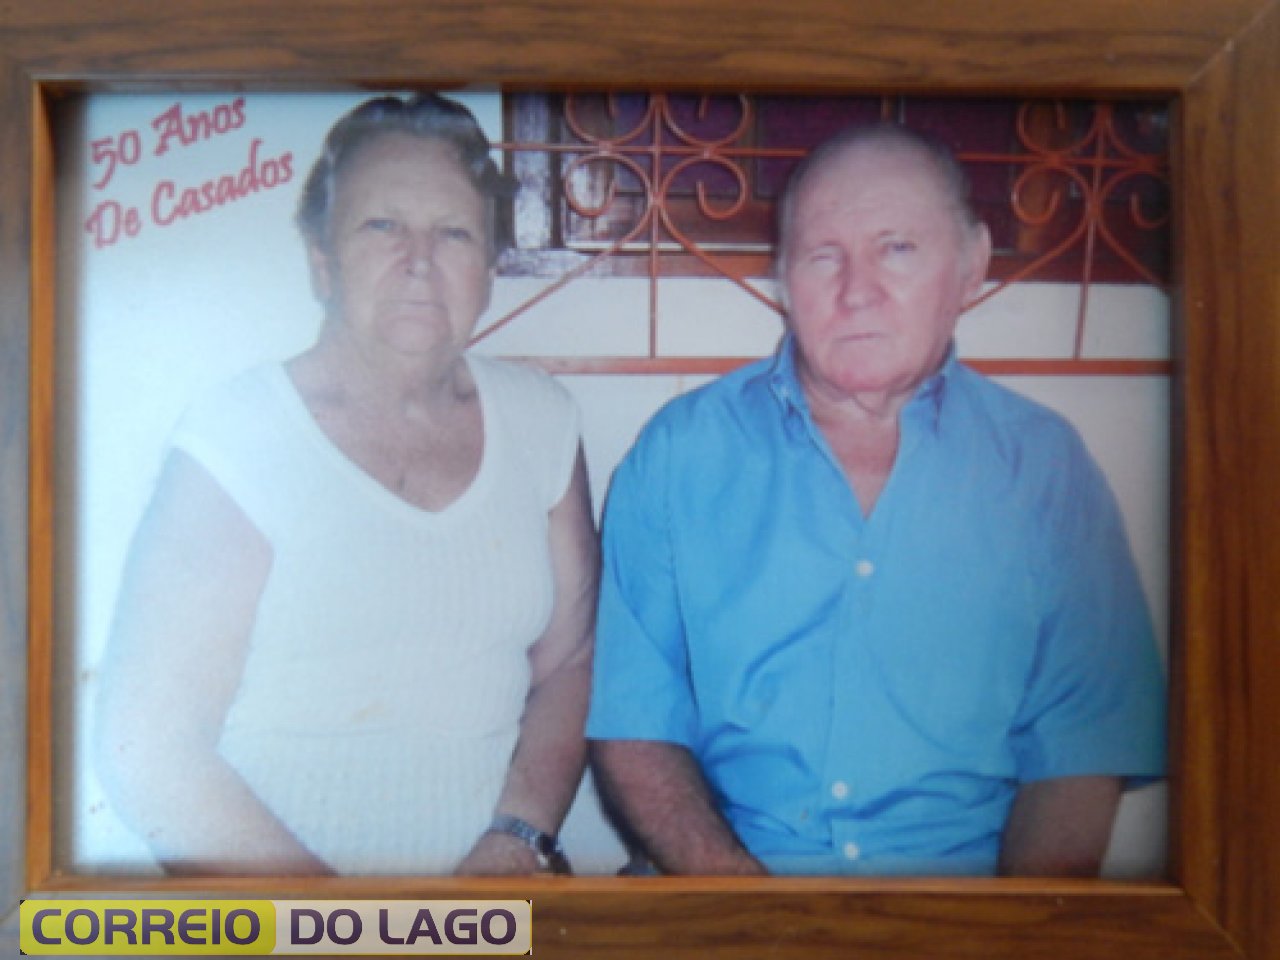 Casal Veleda e Bronildo Bender, quando completaram 50 anos de casados em 2013. Santa Helena PR.